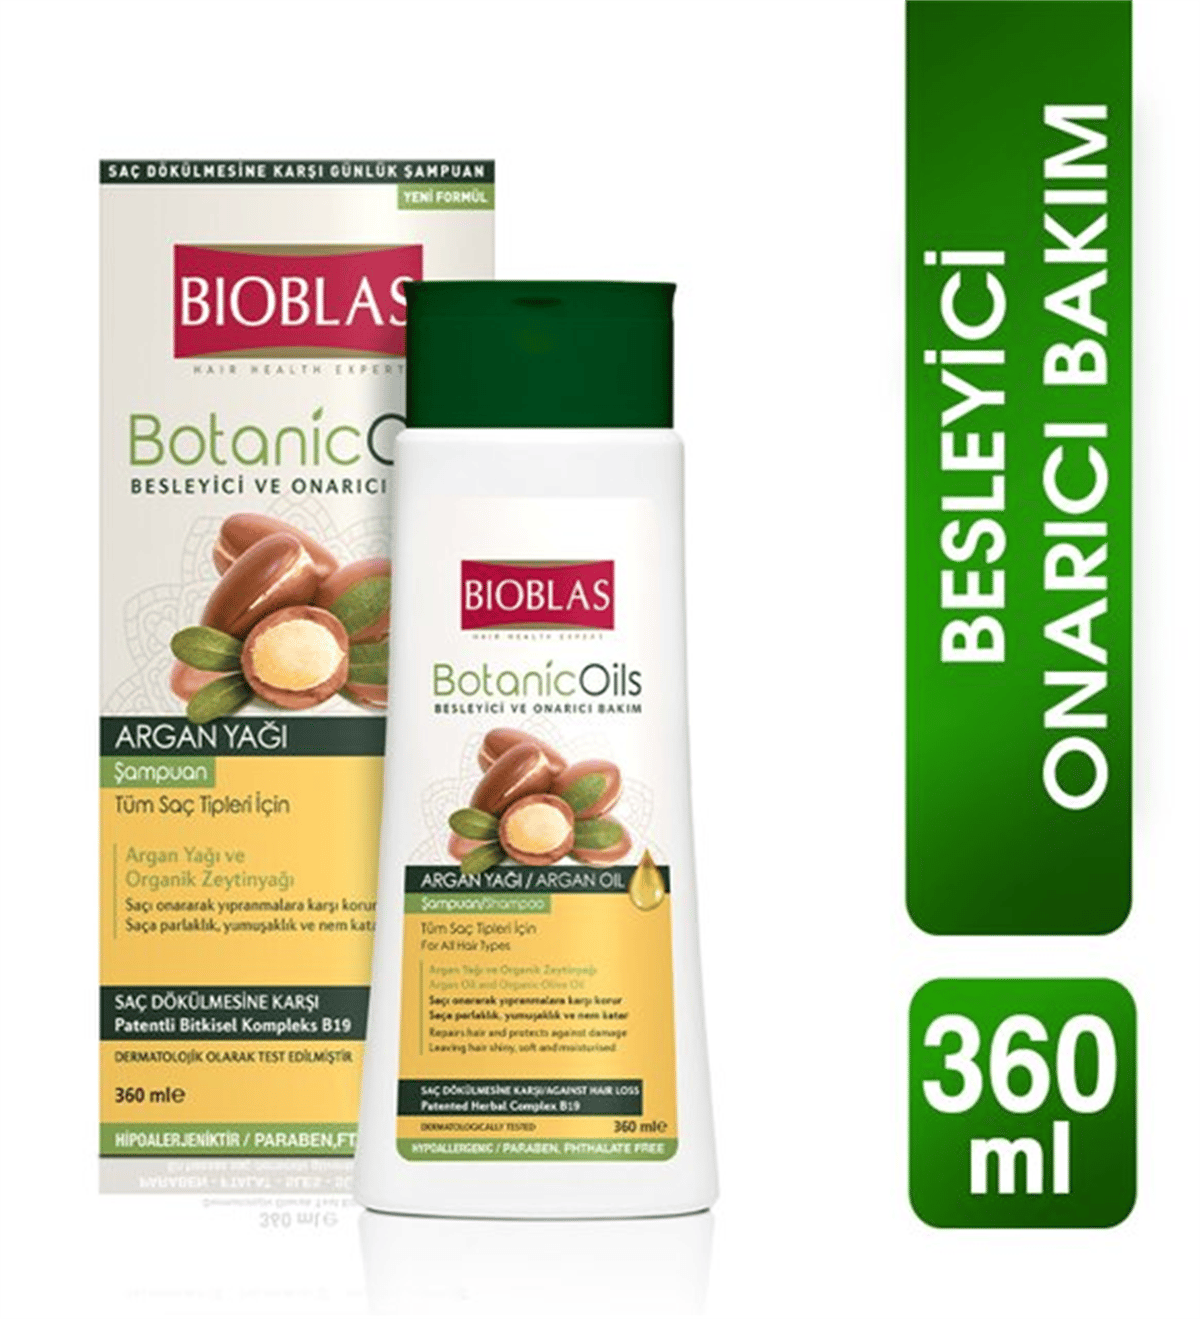 Bioblas Botanic Oils Tüm Saç Tipleri İçin Argan Yağlı Şampuan 360 ml